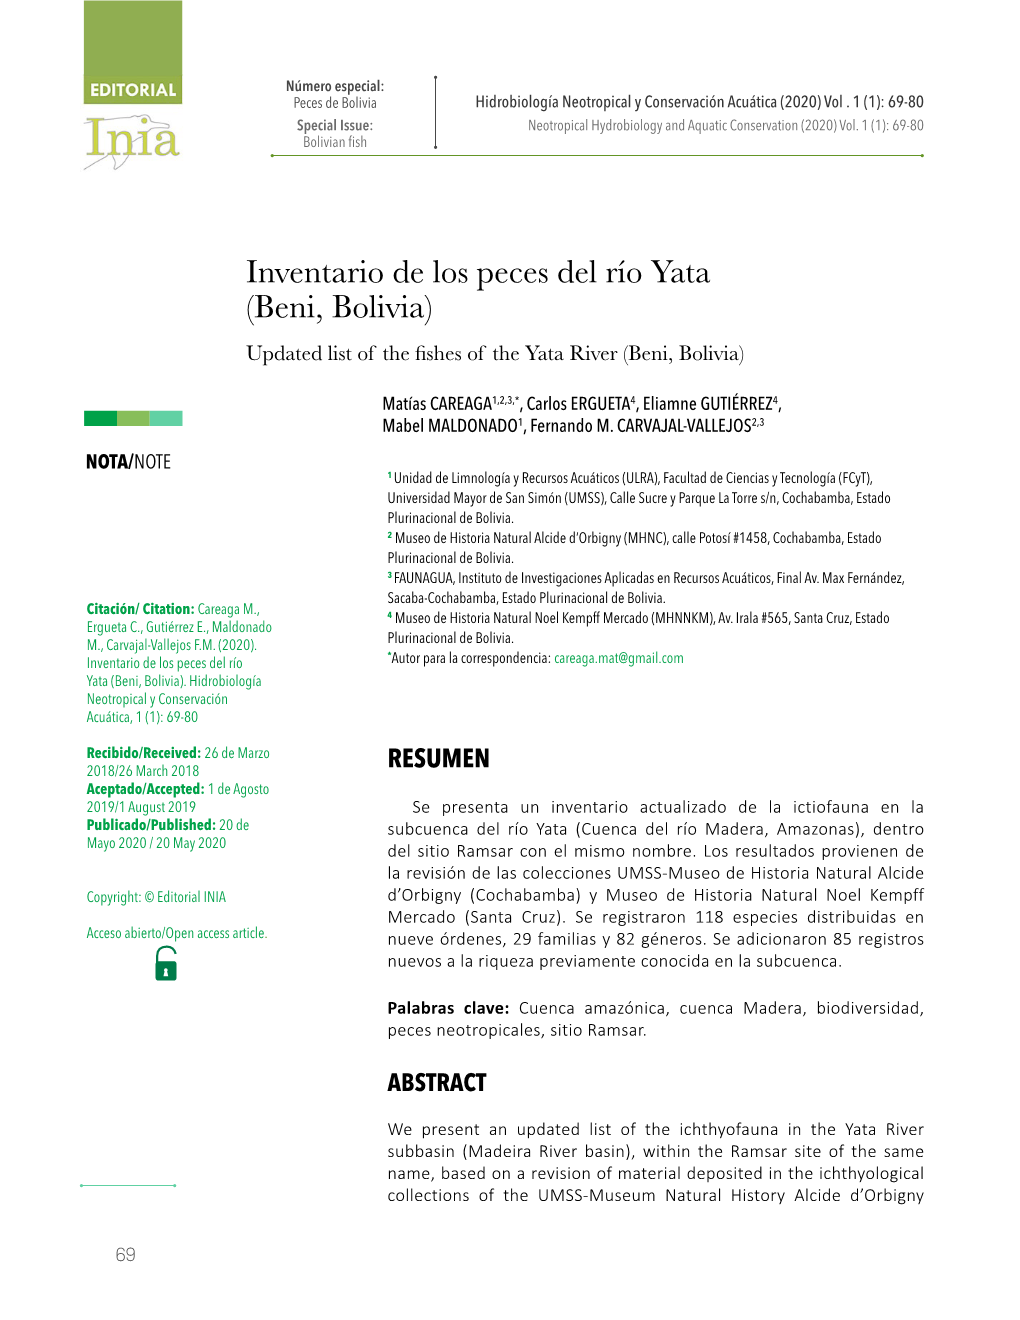 Inventario De Los Peces Del Río Yata (Beni, Bolivia) Updated List of the Fishes of the Yata River (Beni, Bolivia)